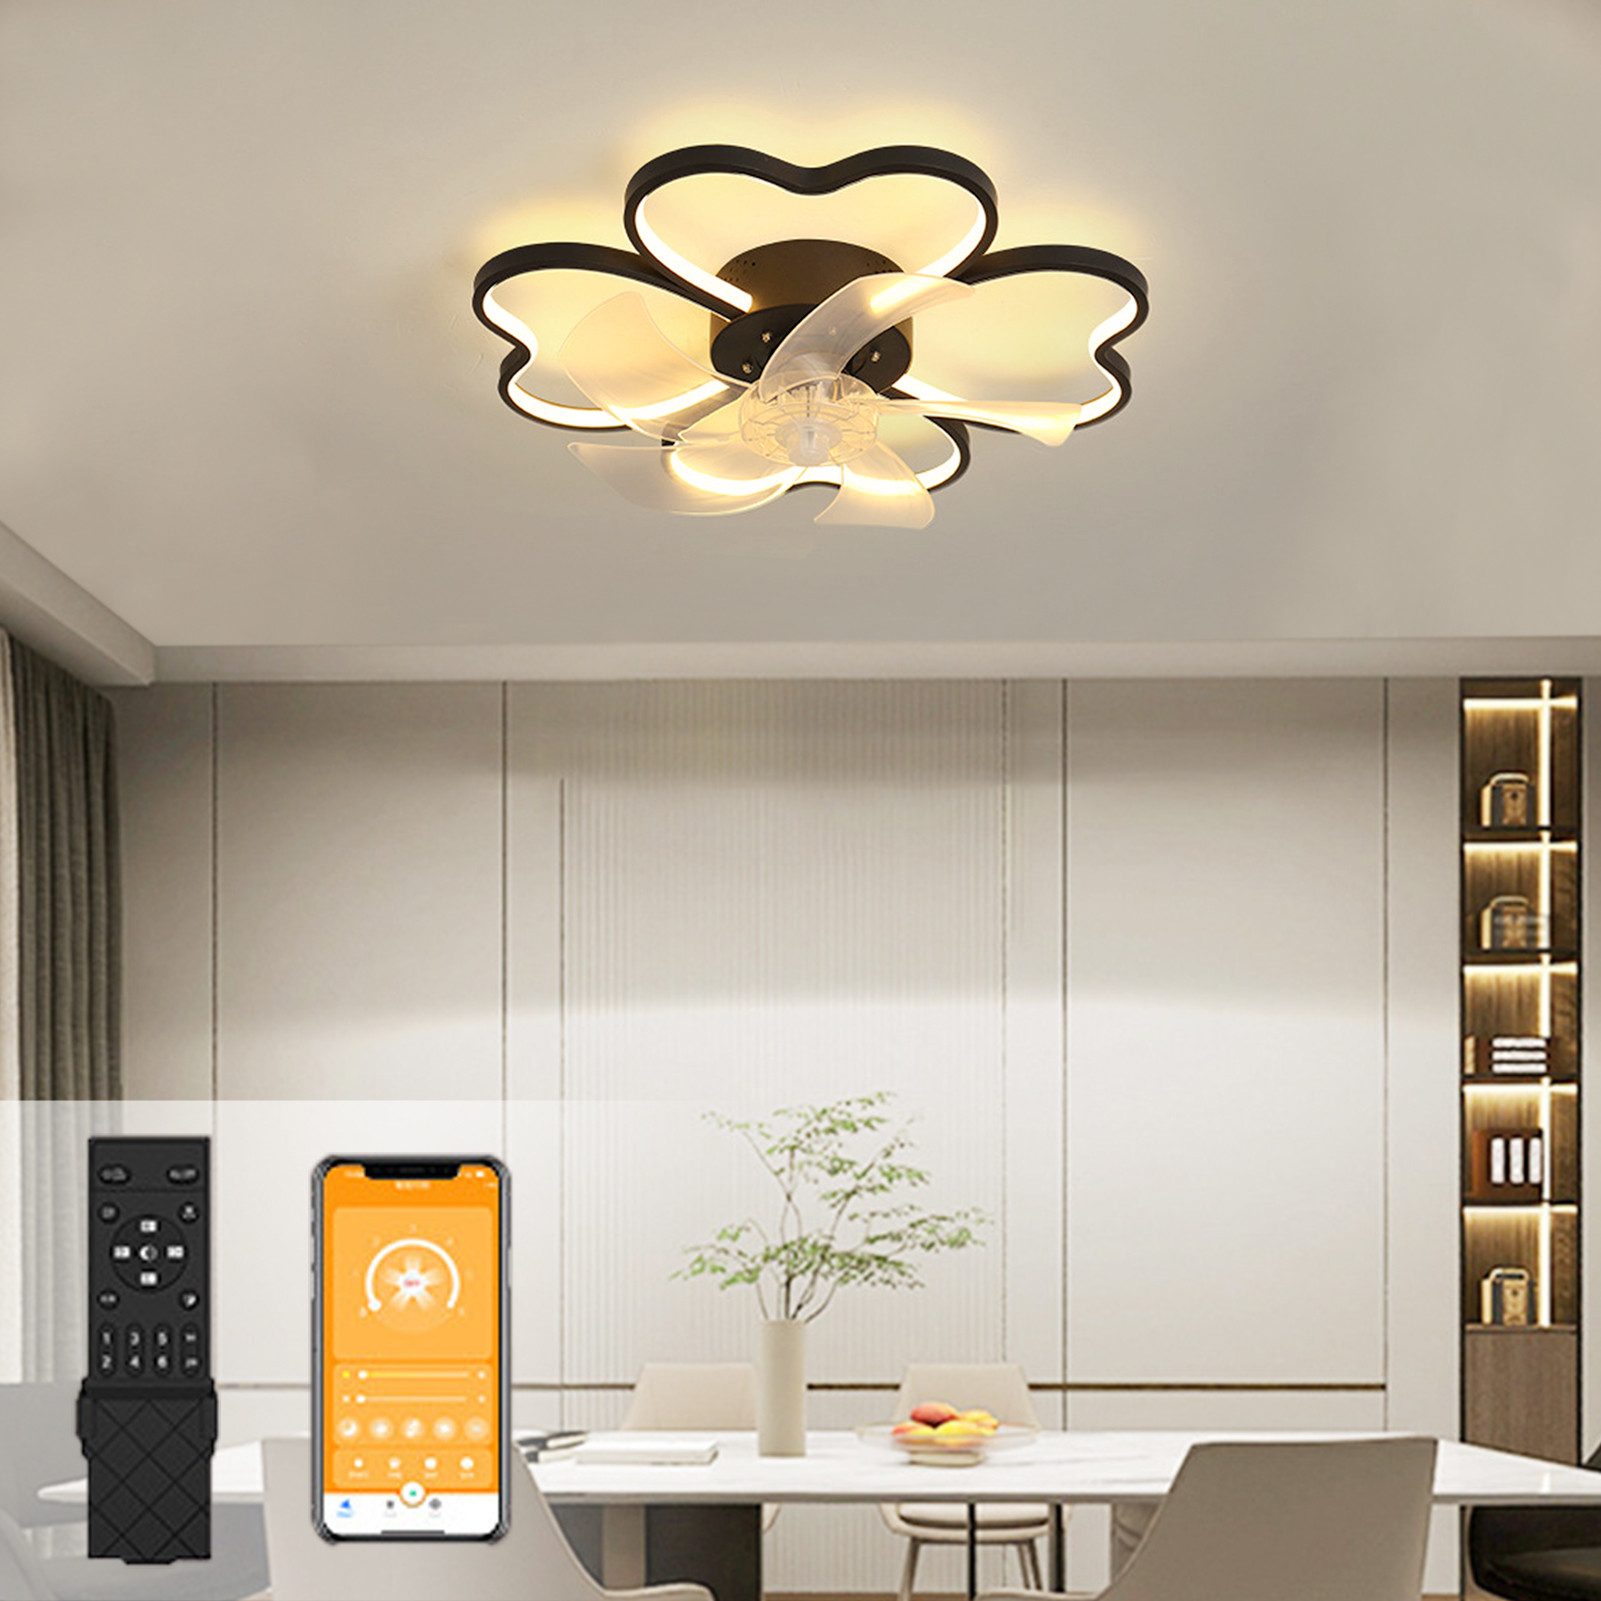 Rutaqian Deckenventilator LED-Deckenleuchte mit Ventilator Ø 50cm, Deckenventilator mit Lampe, Moderne Deckenventilator Licht Für Wohnzimmer Schlafzimmer Esszimmer